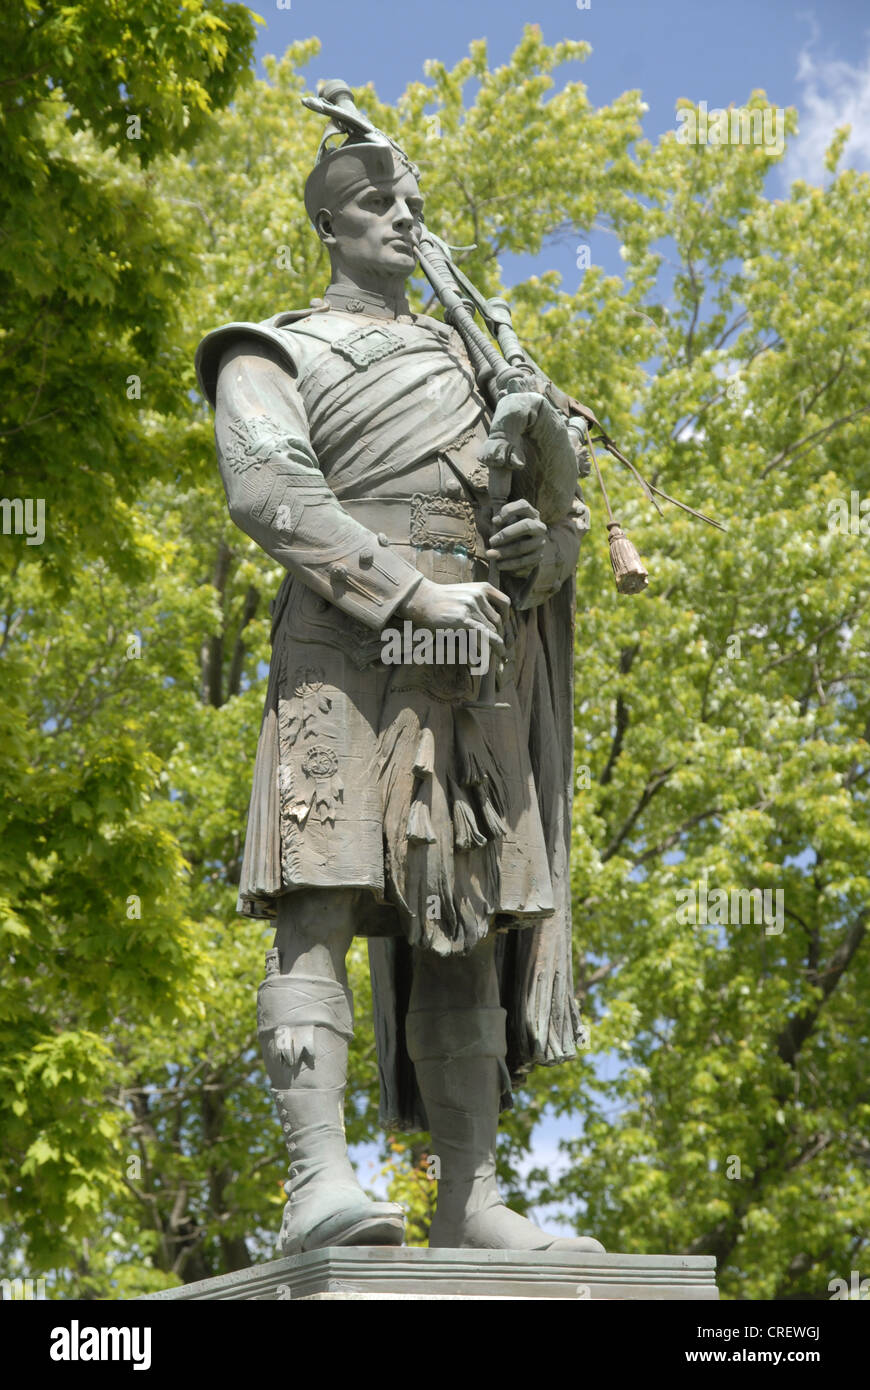 Statue of a piper in New Glasgow, Nova Scotia Stock Photo - Alamy